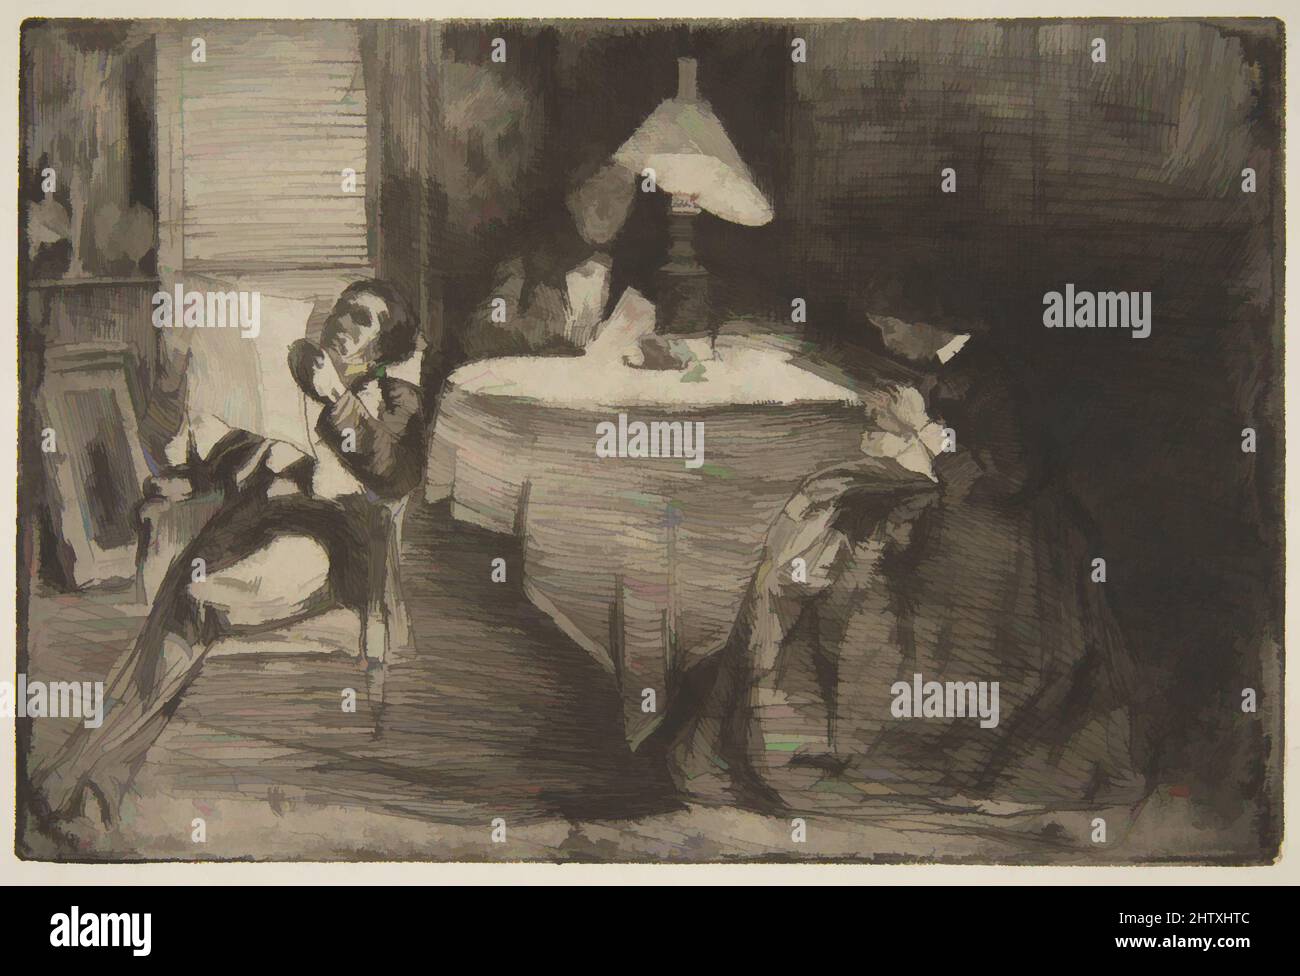 Arte ispirata alla Sala della Musica, 1859, incisione; secondo stato di quattro (Glasgow); fine carta antica con getto verdastro, piatto: 5 11/16 x 8 1/2 pollici. (14,4 x 21,6 cm), Prints, James McNeill Whistler (American, Lowell, Massachusetts 1834–1903 London, opere classiche modernizzate da Artotop con un tuffo nella modernità. Forme, colore e valore, impatto visivo accattivante sulle emozioni artistiche attraverso la libertà delle opere d'arte in modo contemporaneo. Un messaggio senza tempo che persegue una nuova direzione selvaggiamente creativa. Artisti che si rivolgono al supporto digitale e creano l'NFT Artotop Foto Stock